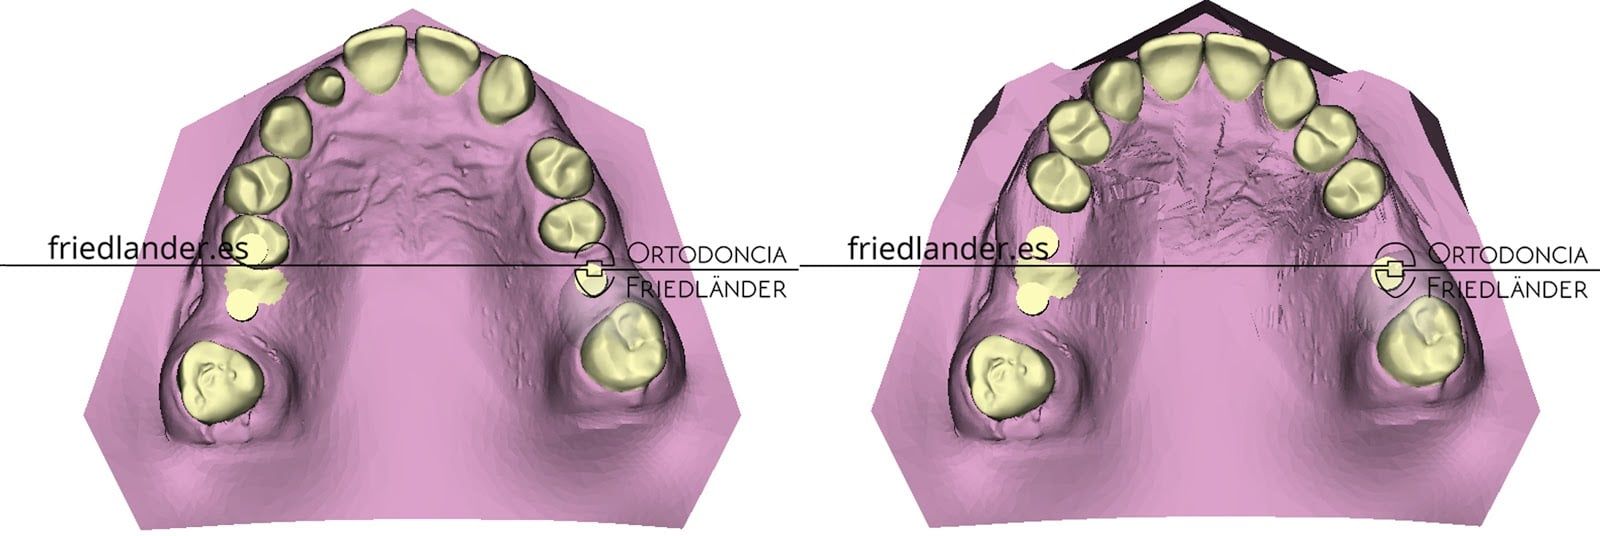 implantes ortodoncia